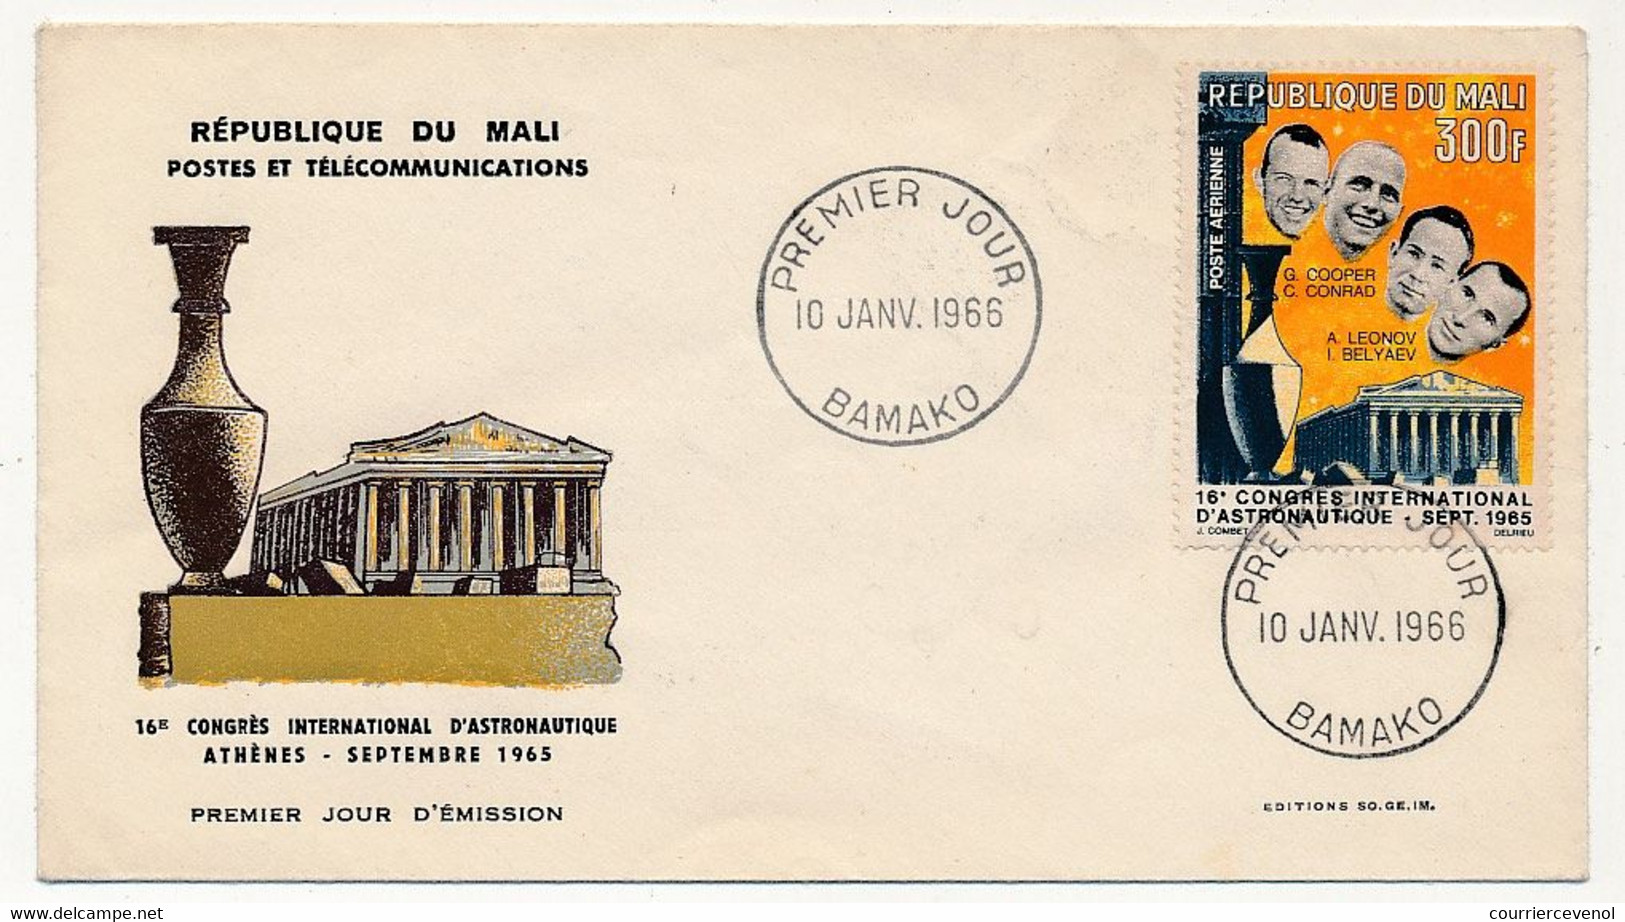 MALI => Enveloppe FDC => 300F 16eme Congrès National D'Aéronautique - 10 Janvier 1966 - Bamako - Malí (1959-...)